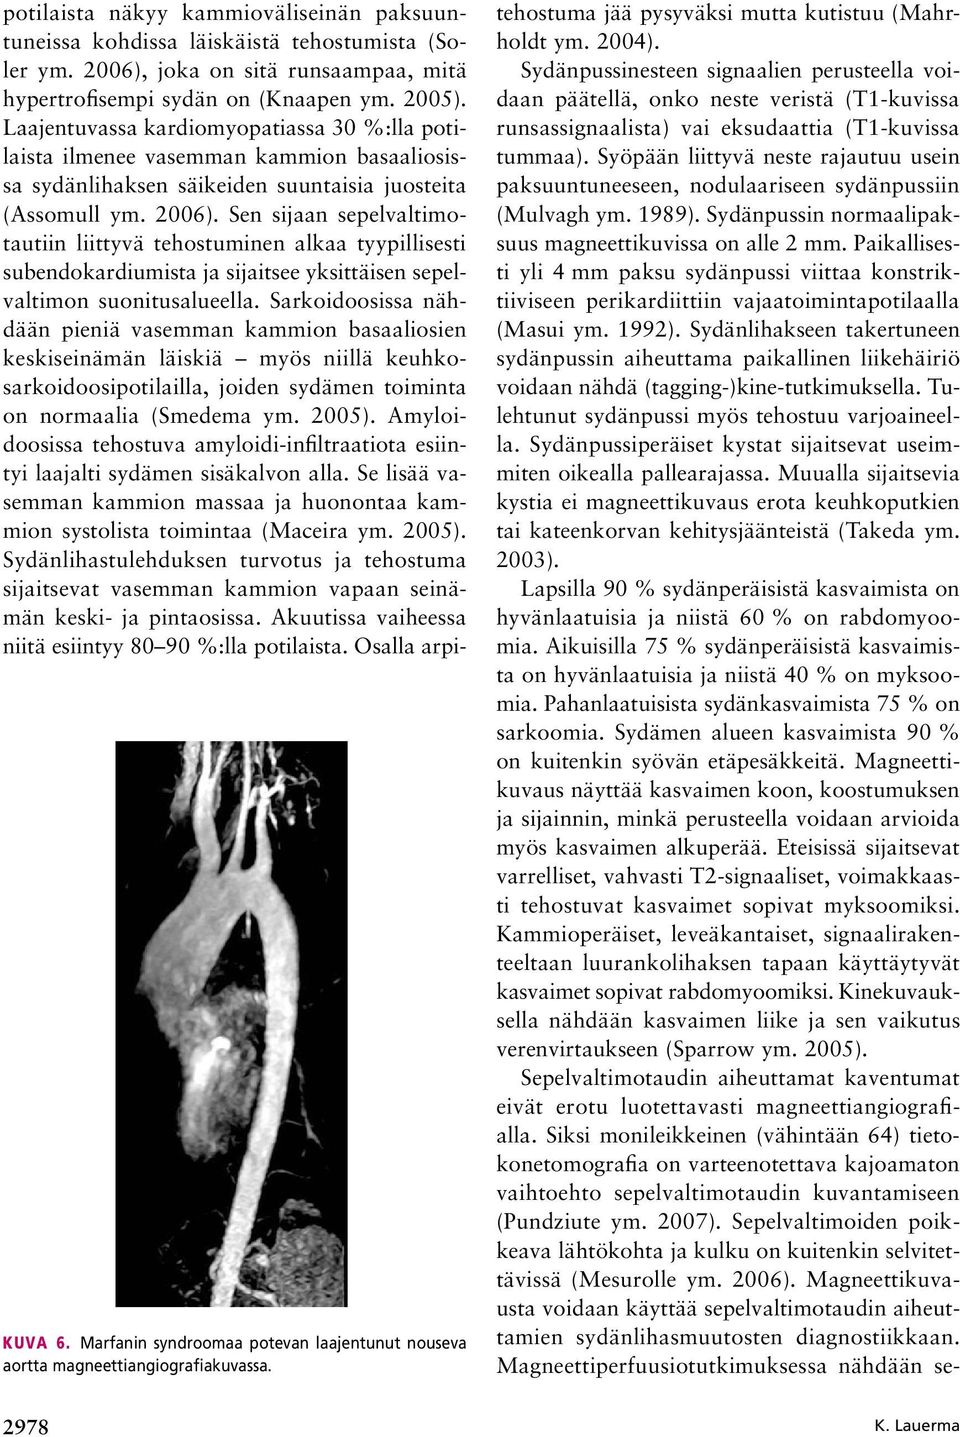 Laajentuvassa kardiomyopatiassa 30 %:lla potilaista ilmenee vasemman kammion basaaliosissa sydänlihaksen säikeiden suuntaisia juosteita (Assomull ym. 2006).